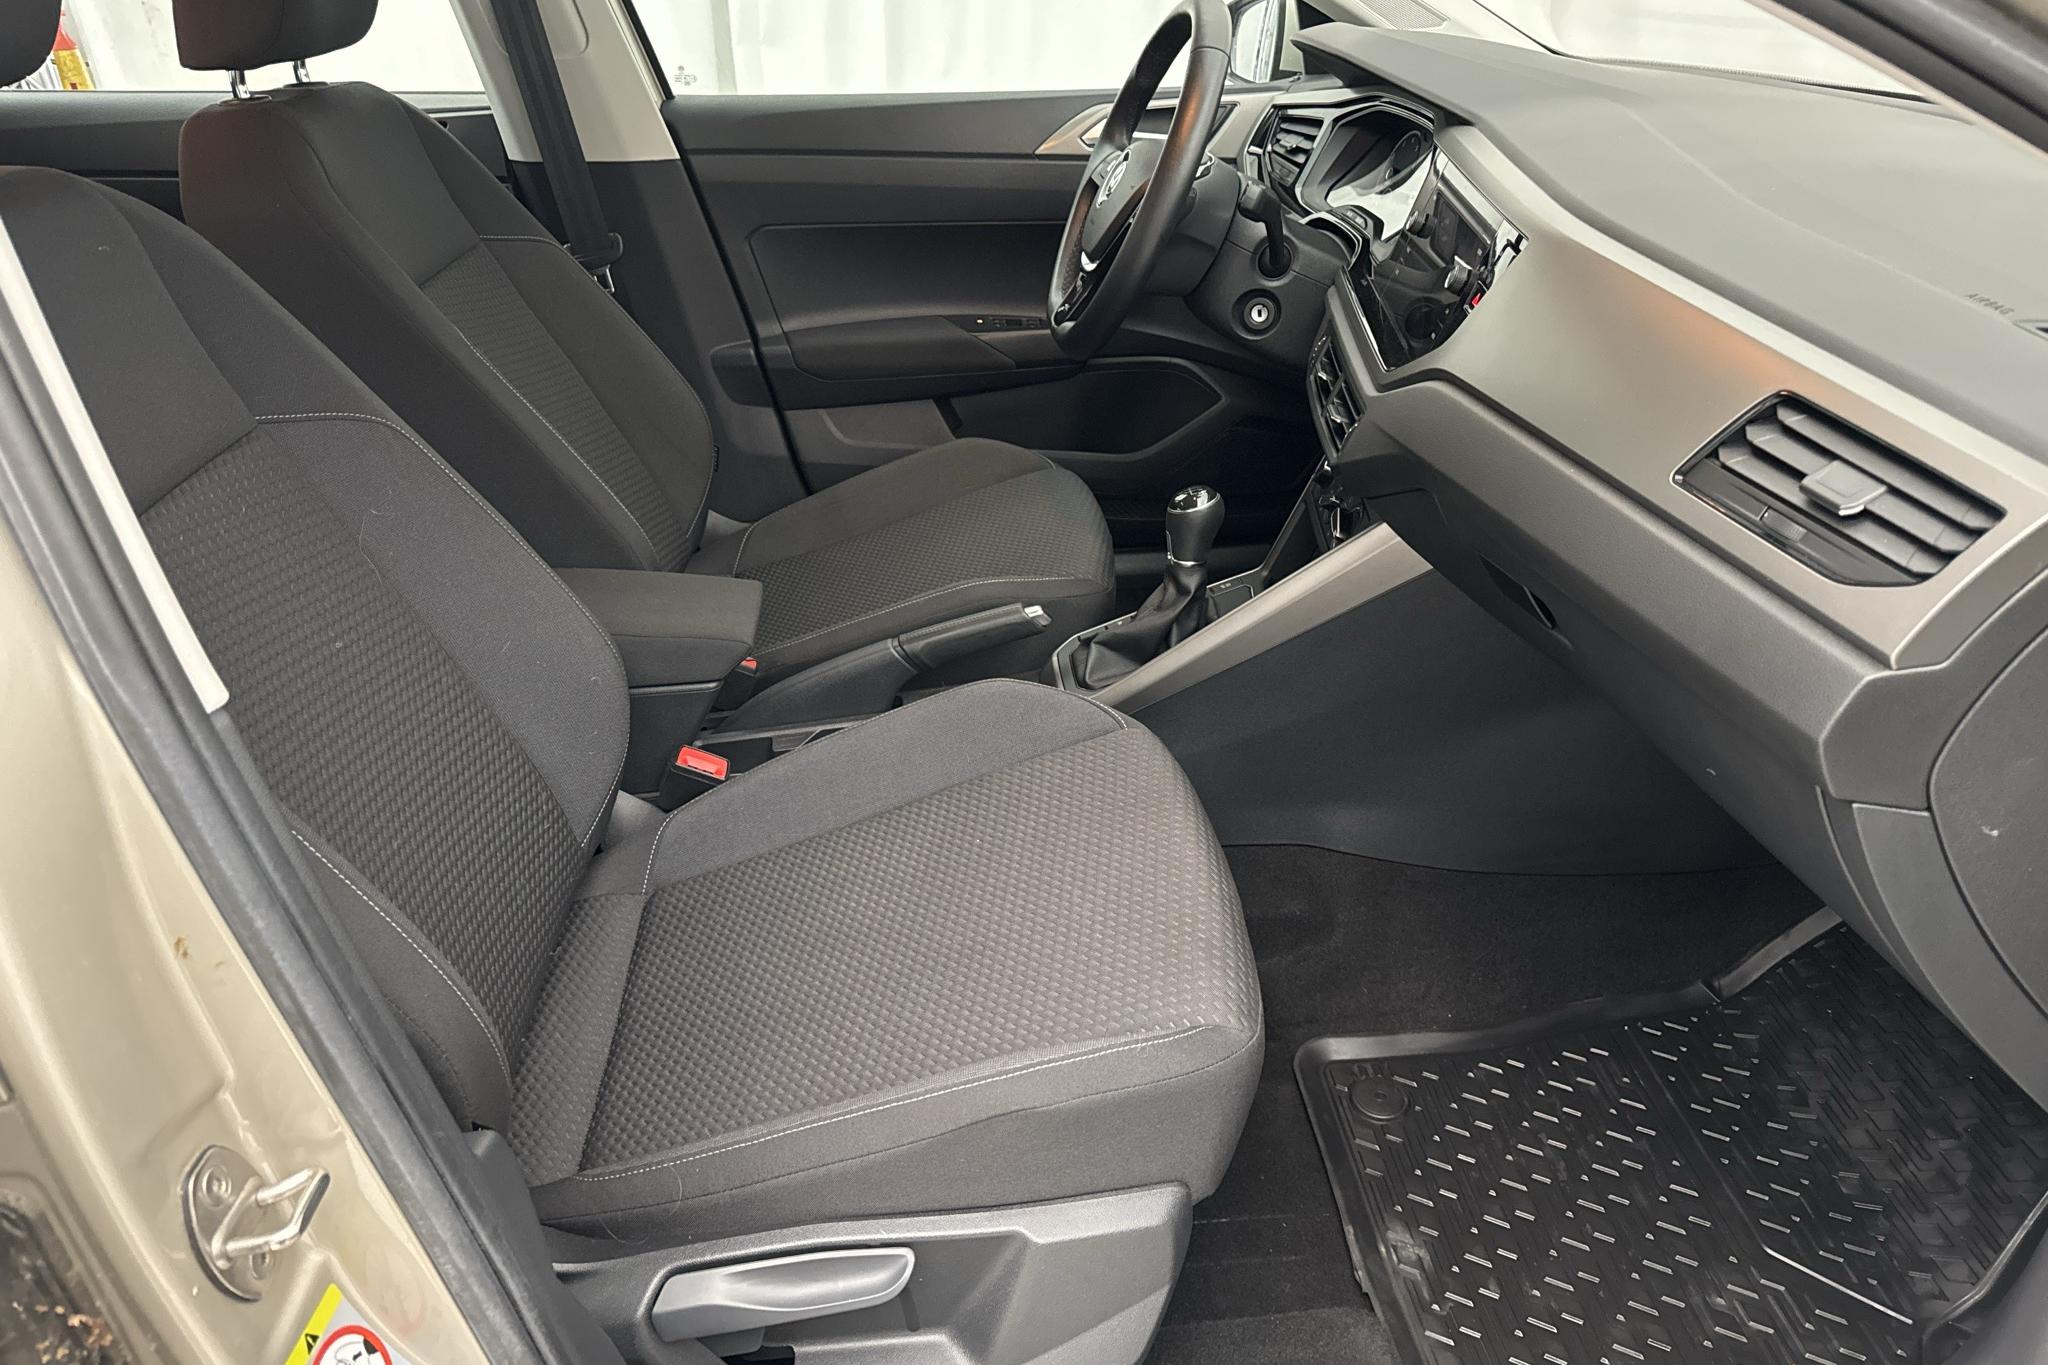 VW Polo 1.0 TSI 5dr (95hk) - 2 360 km - Manual - silver - 2018